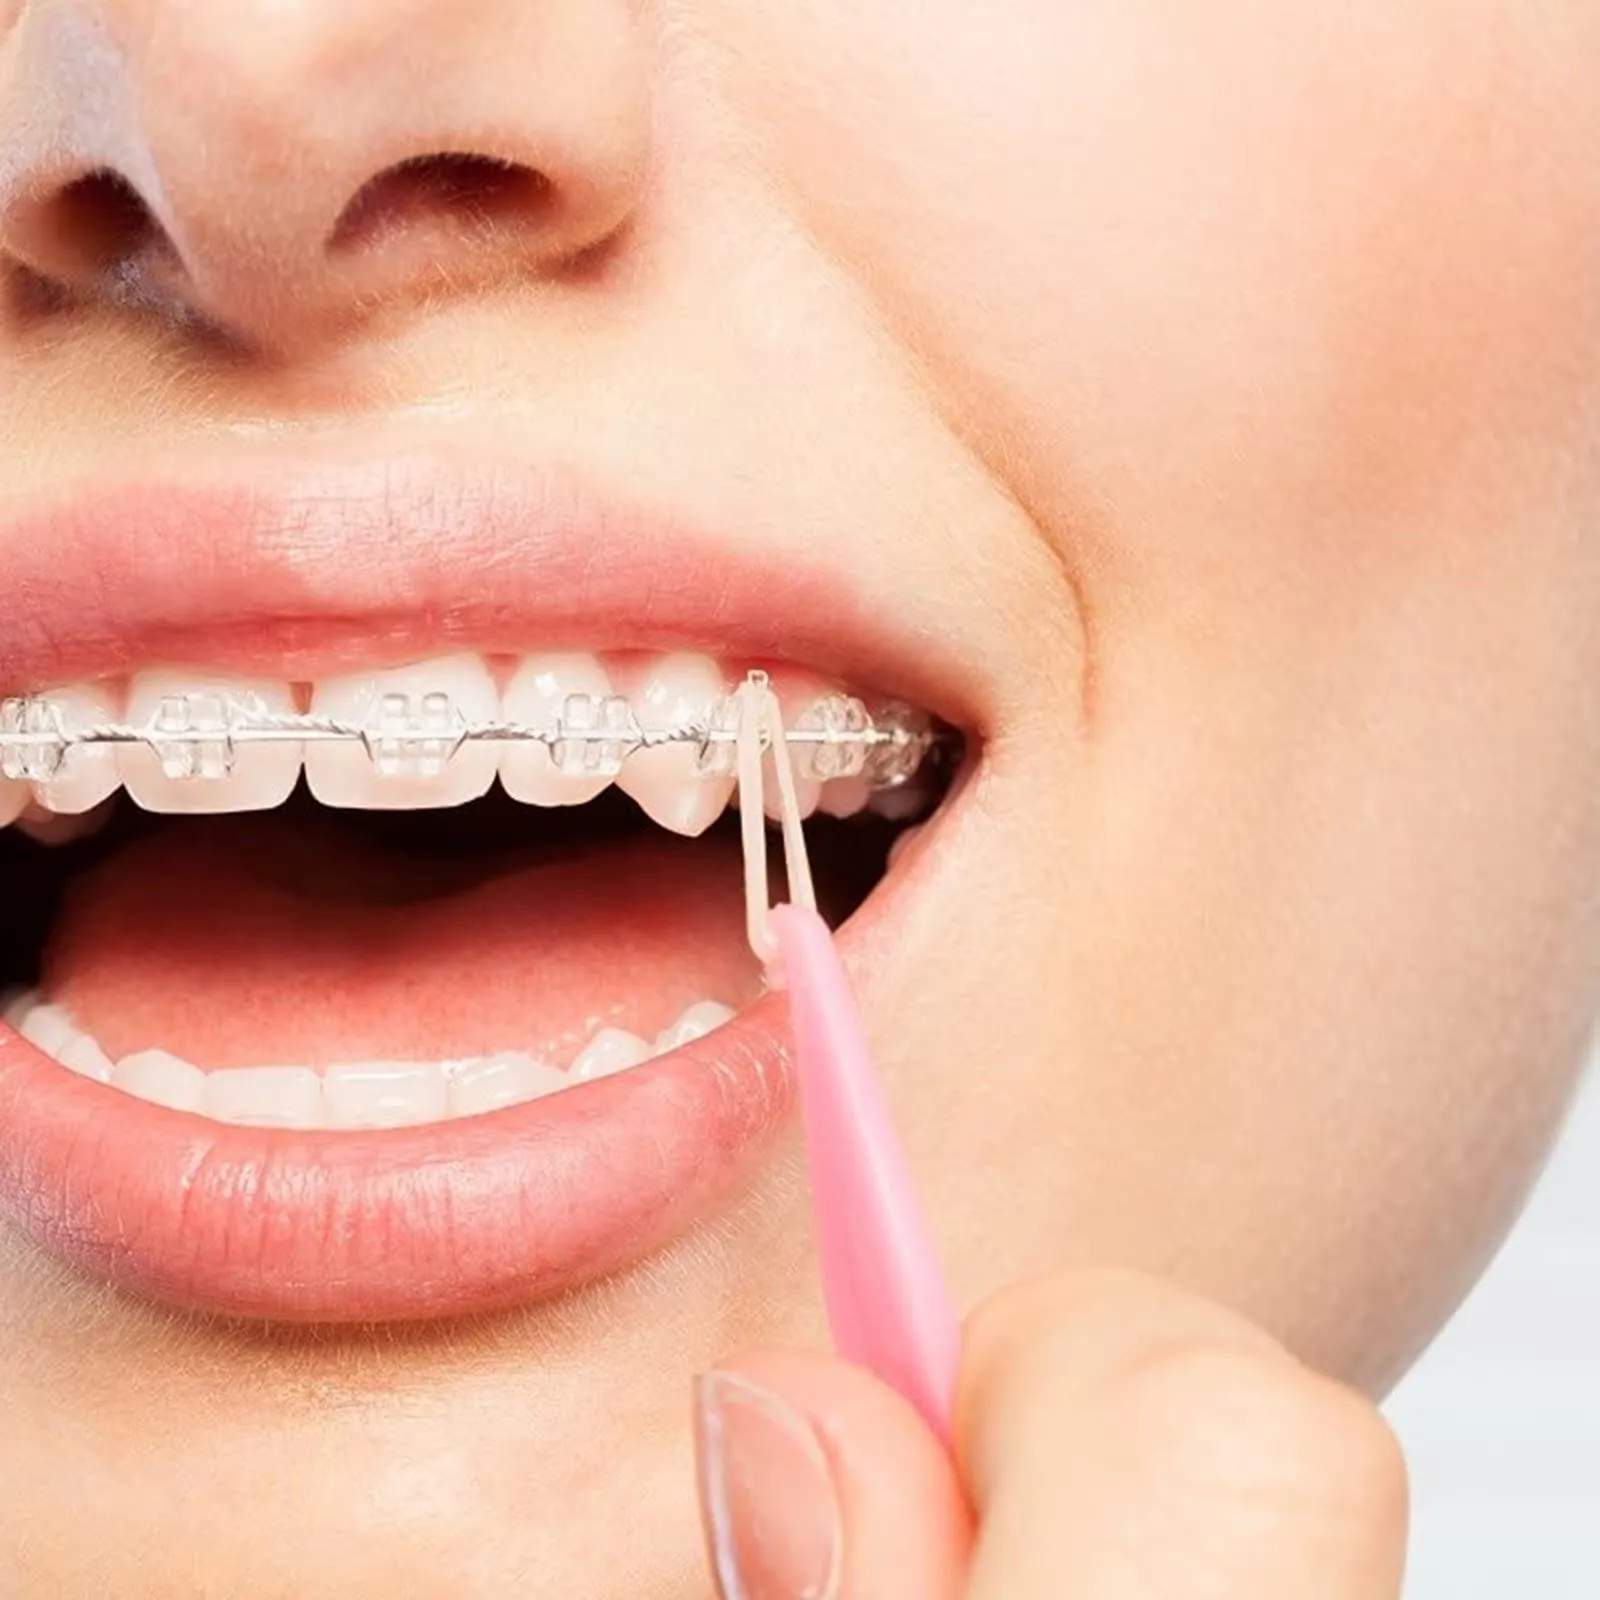 100 Stuks Elastiekjes Voor Tanden Verzorging Tanden Elastiek Beugel Tanden Corrigeert Misvorming 3.5 Oz 3/8